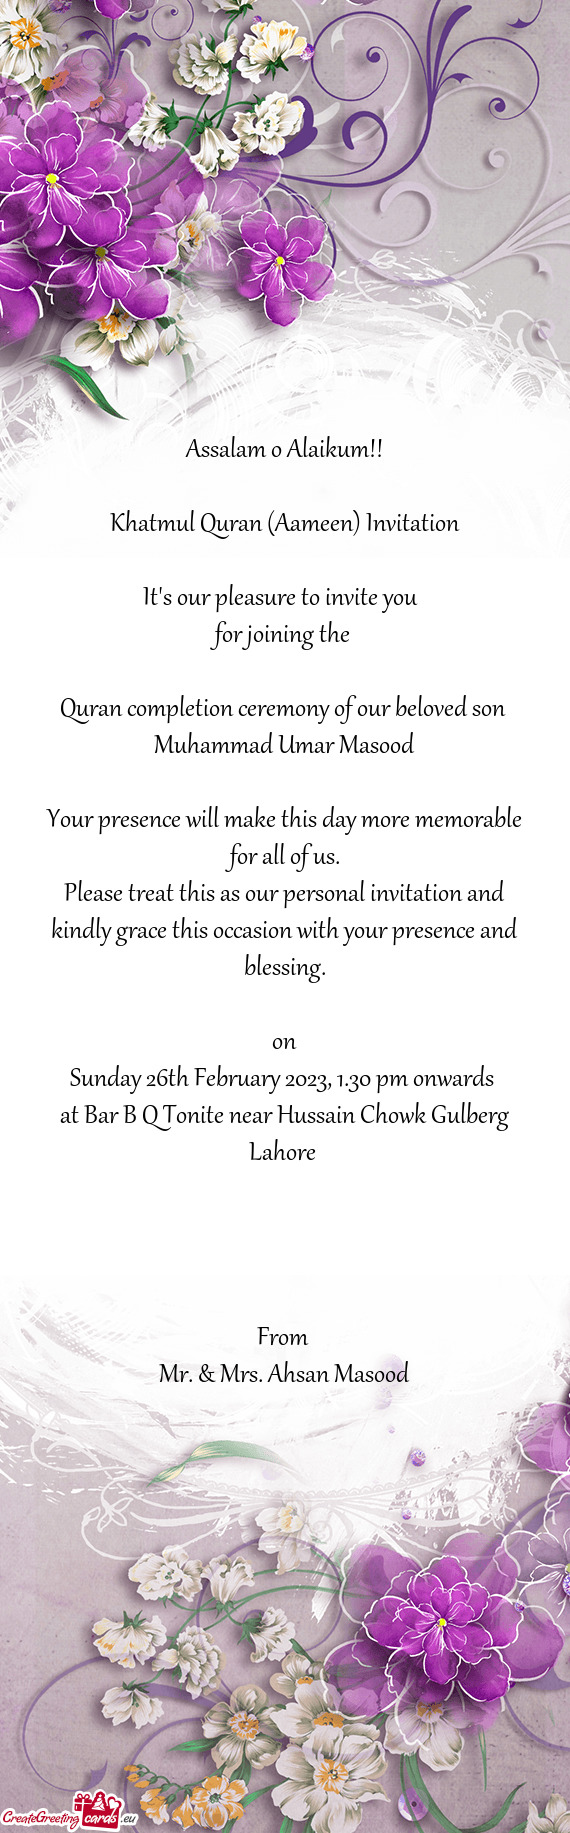 Muhammad Umar Masood